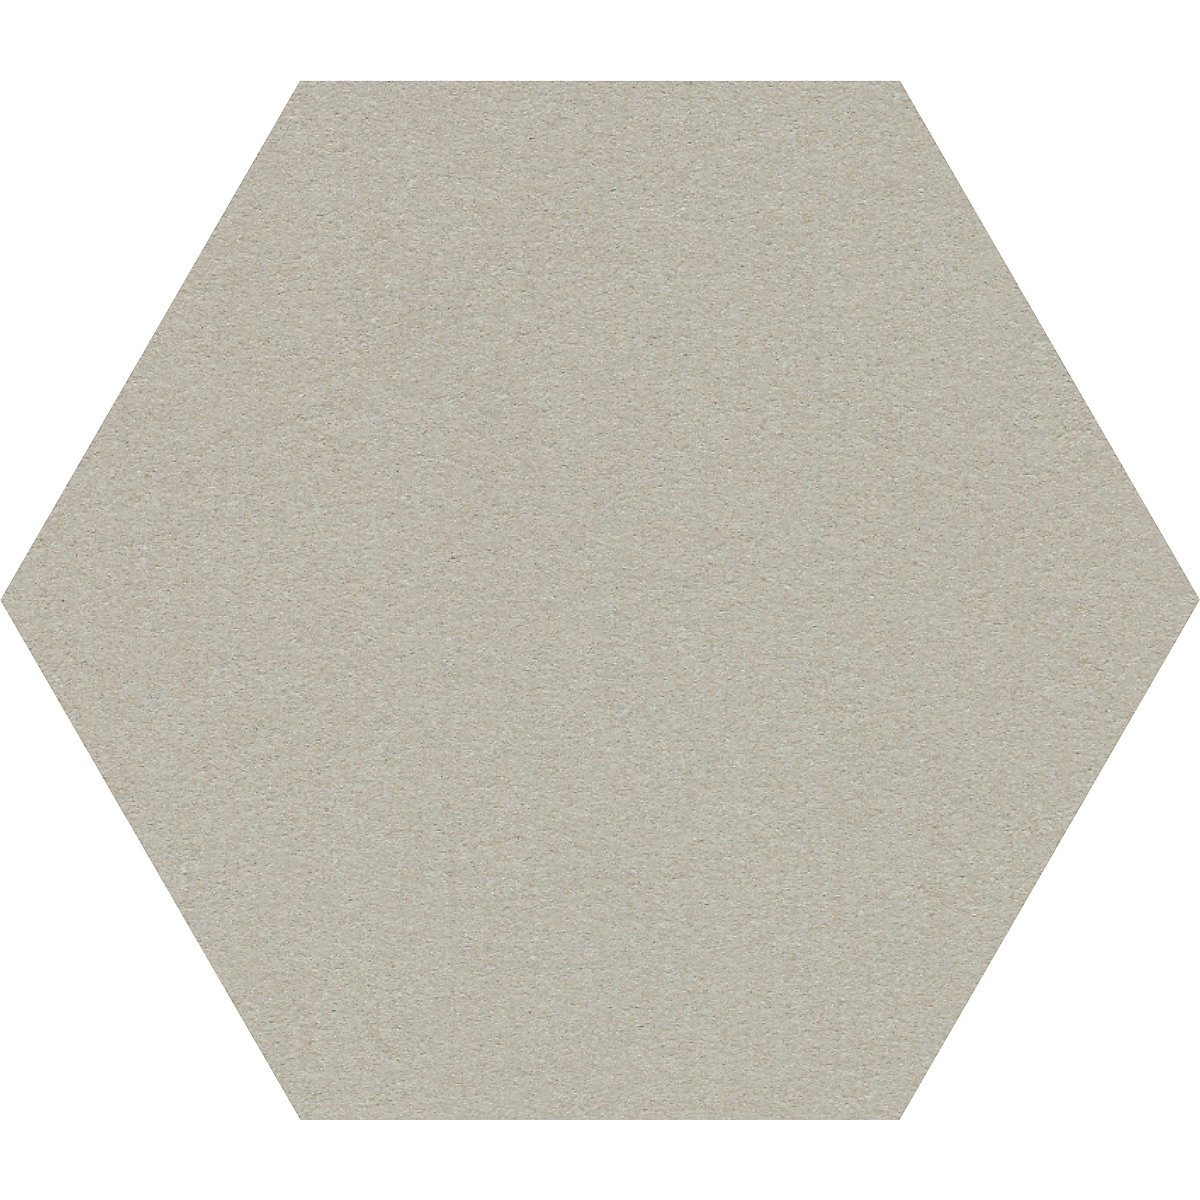 Tableau à épingles design hexagonal – Chameleon, liège, l x h 600 x 600 mm, gris clair-29